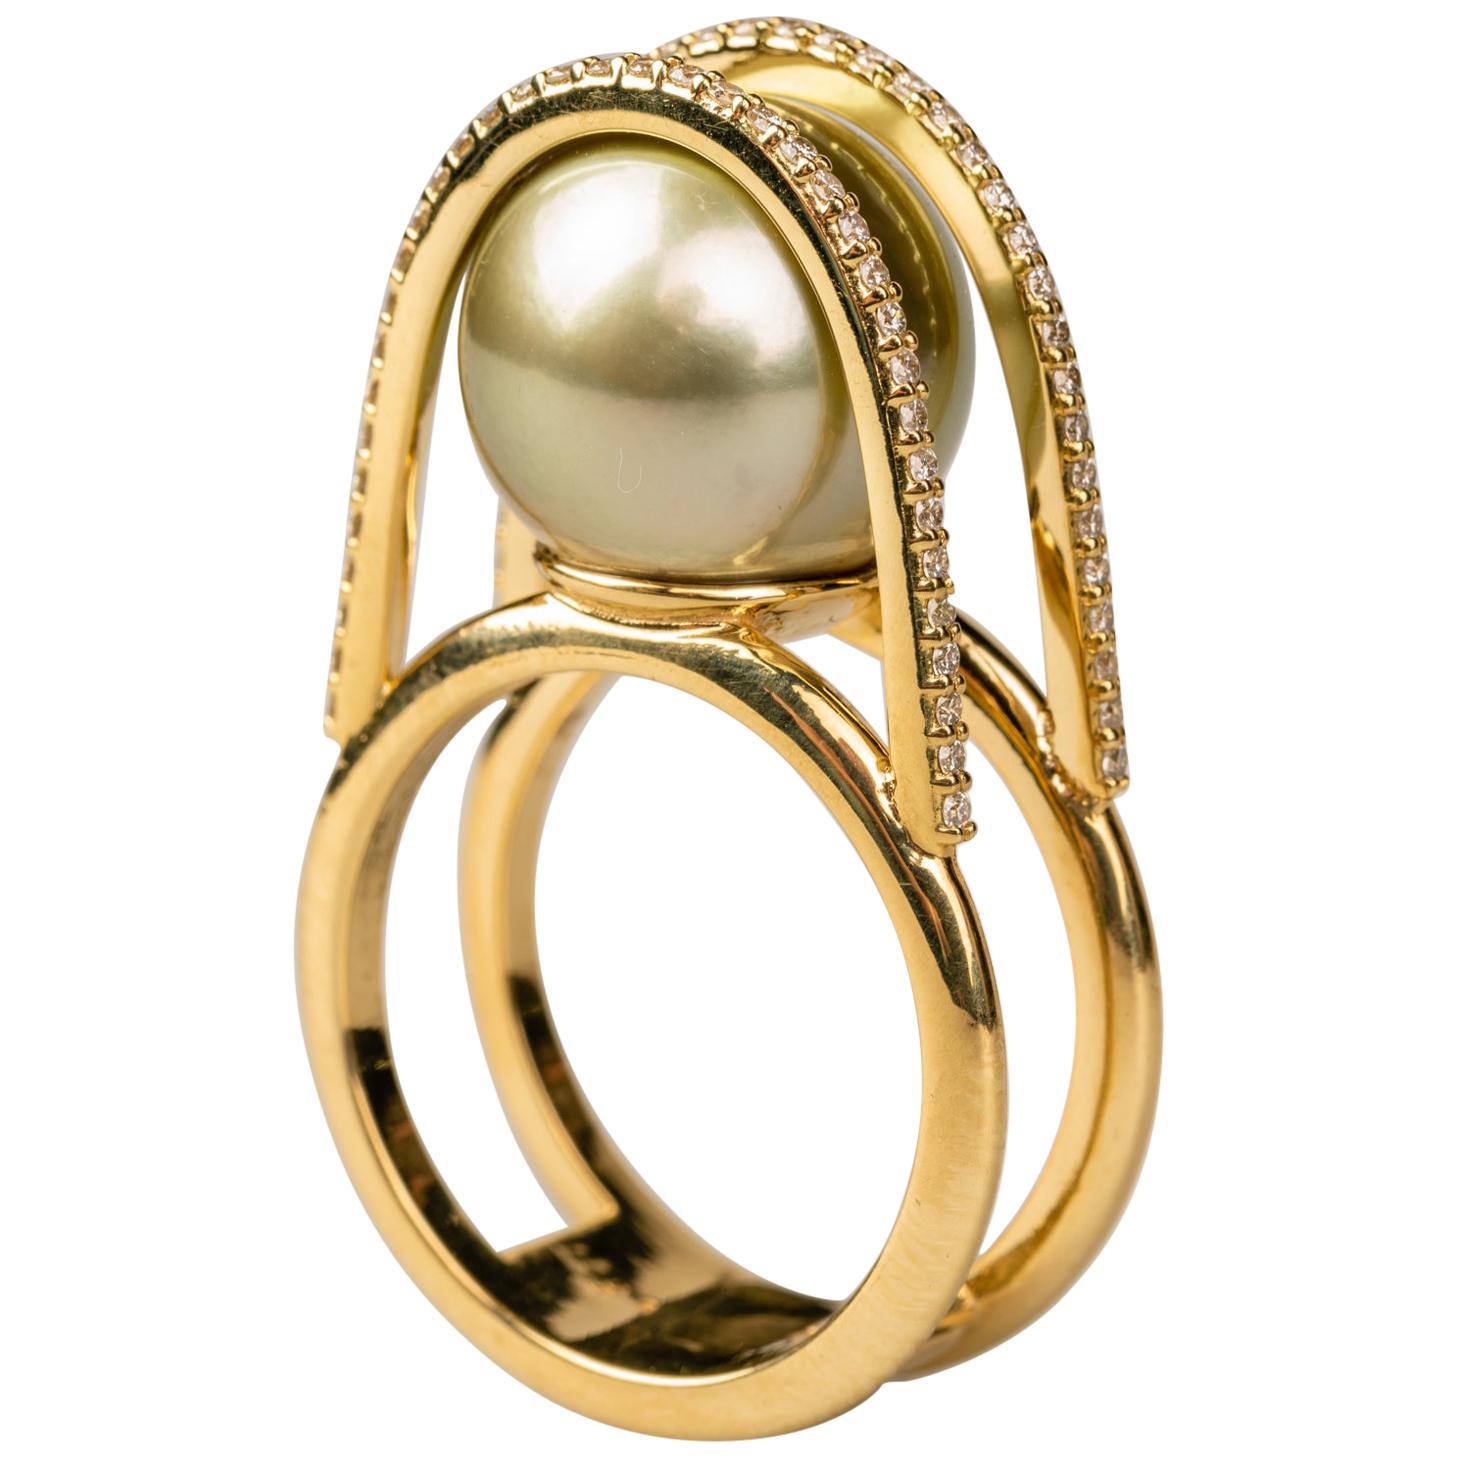 Green Tahitian Pearl Ring with Diamonds